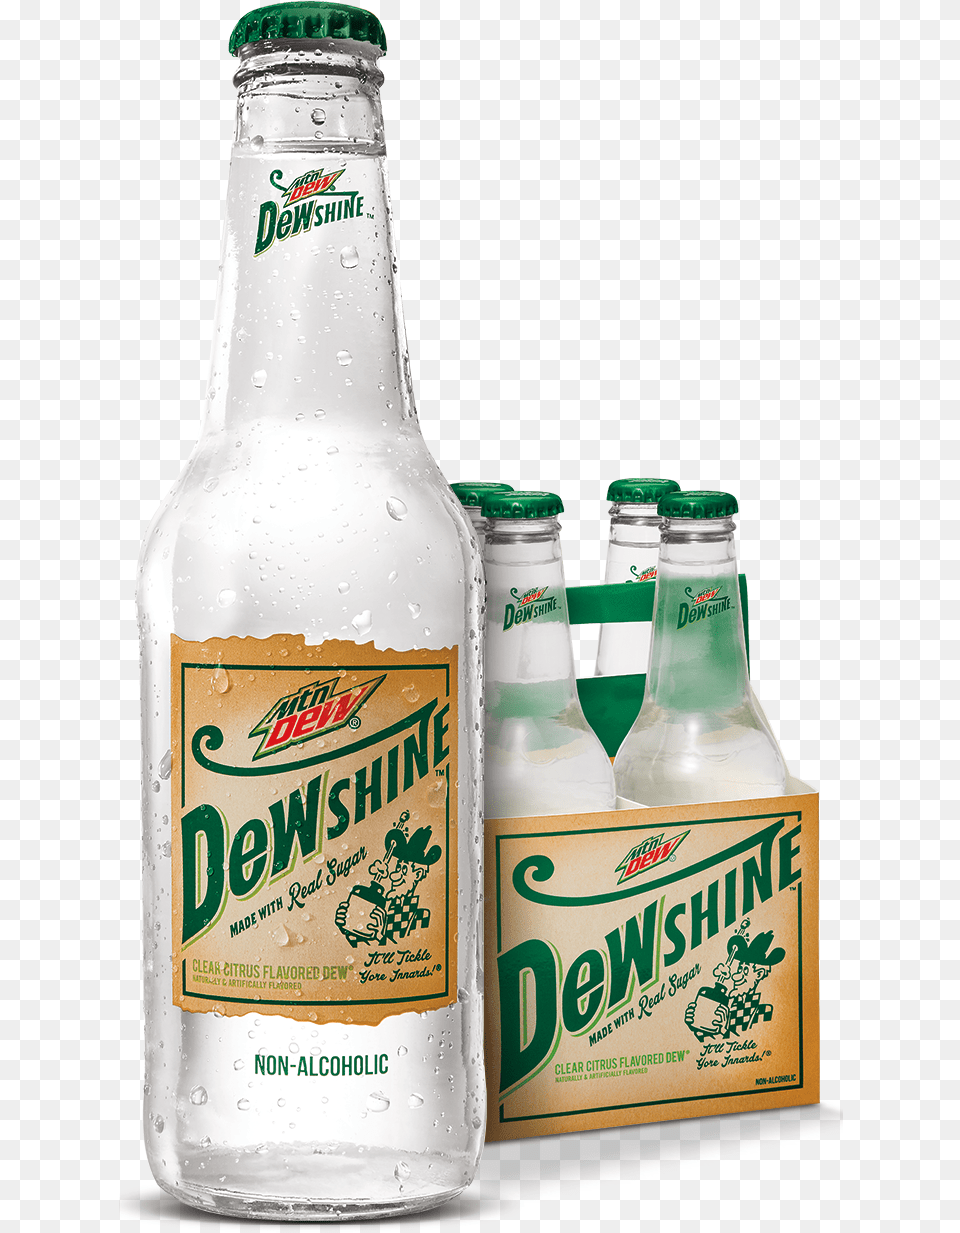 Dewshine Bottle And Case, Alcohol, Beer, Beverage, Beer Bottle Png